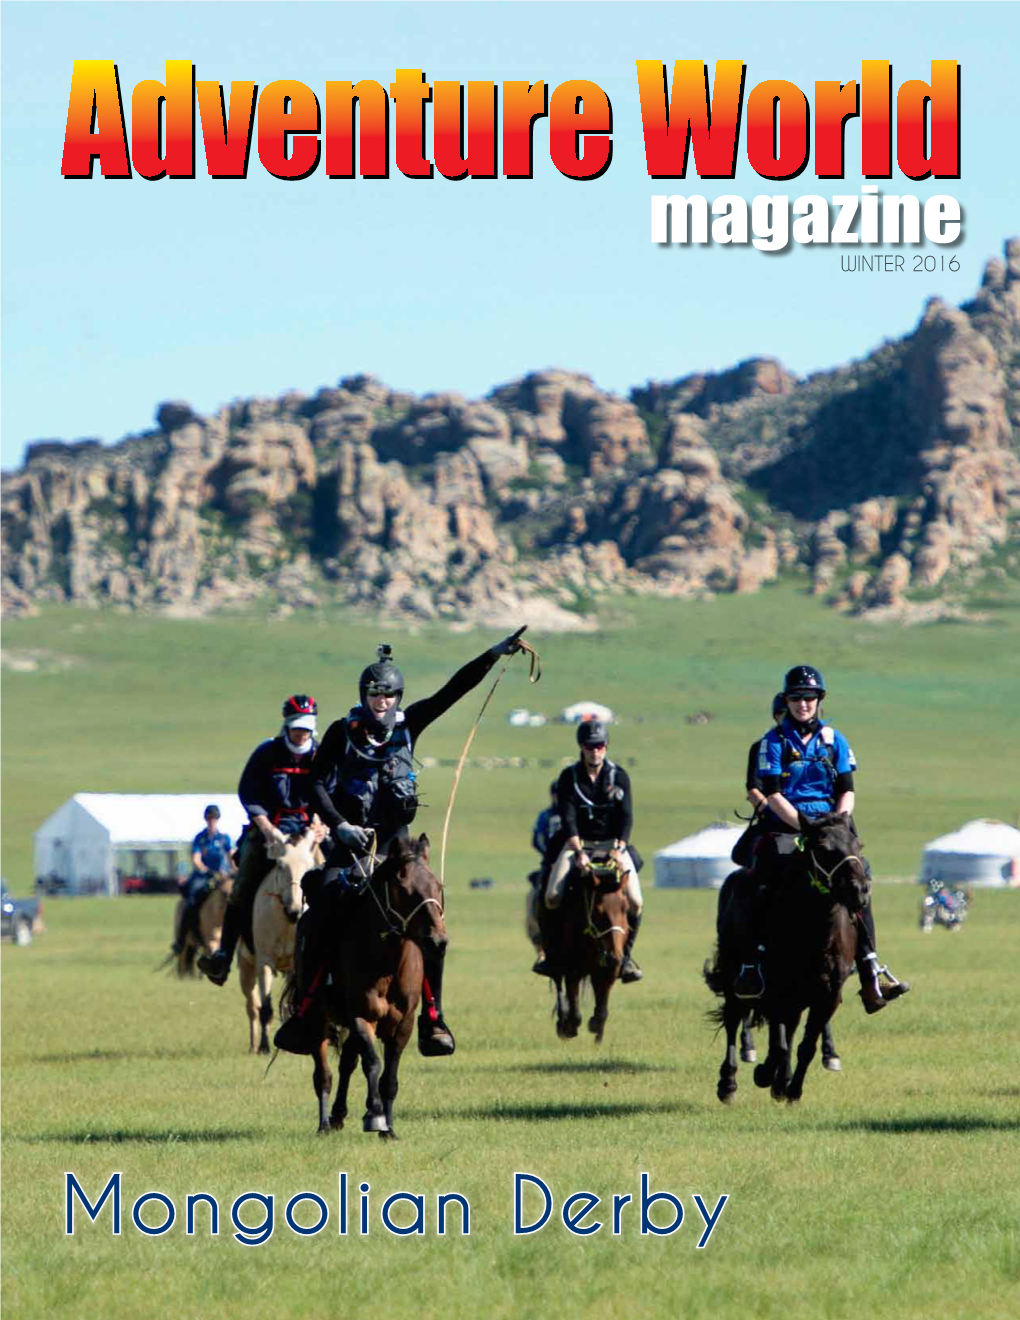 Mongolian Derby